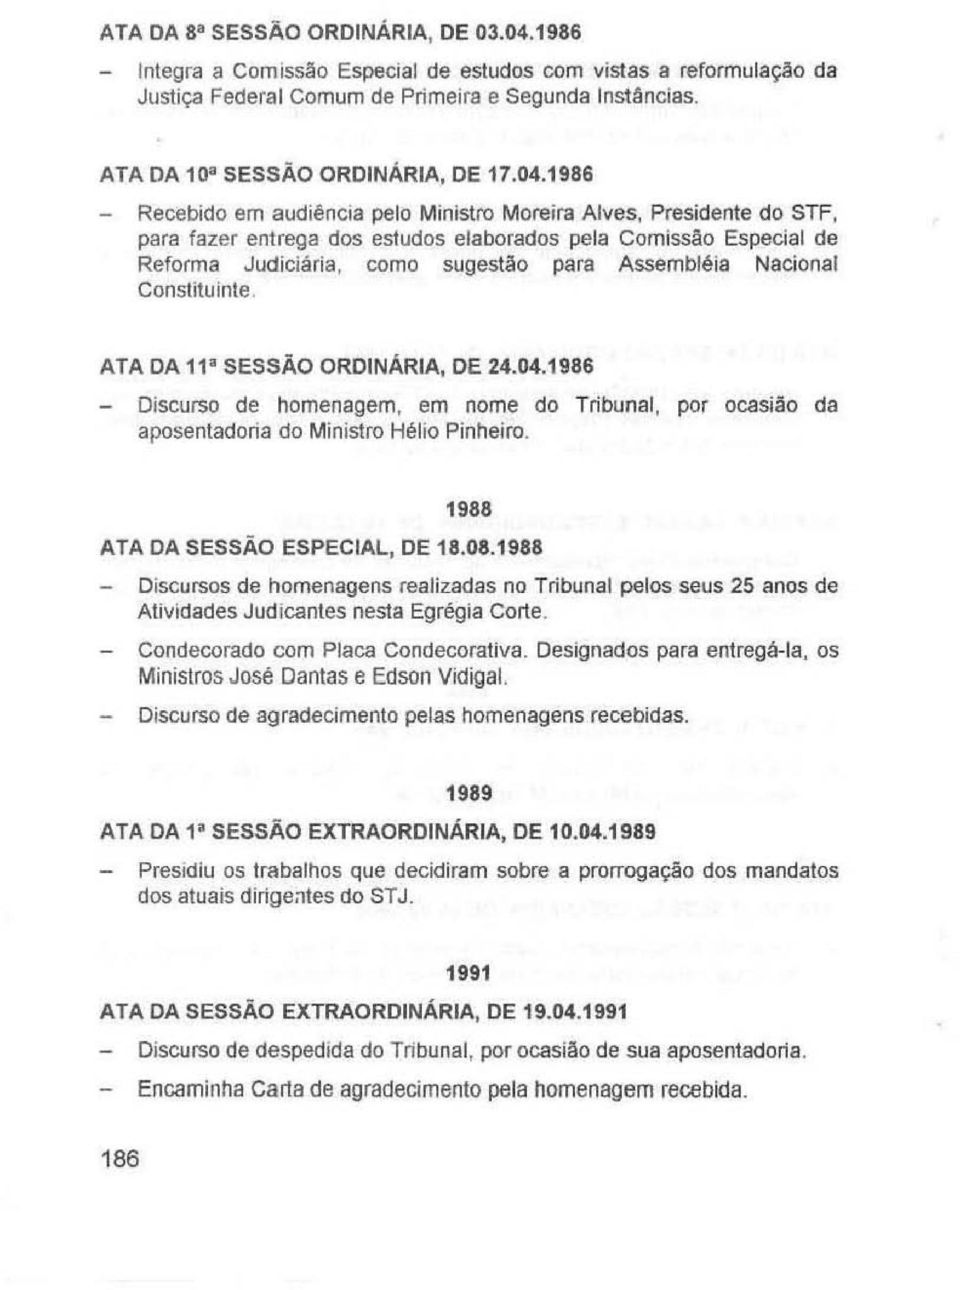 1986 - Recebido em audiência pelo Ministro Moreira Alves, Presidente do STF, para fazer entrega dos estudos elaborados pela Comissão Especial de Reforma Judiciária, como sugestão para Assembléia